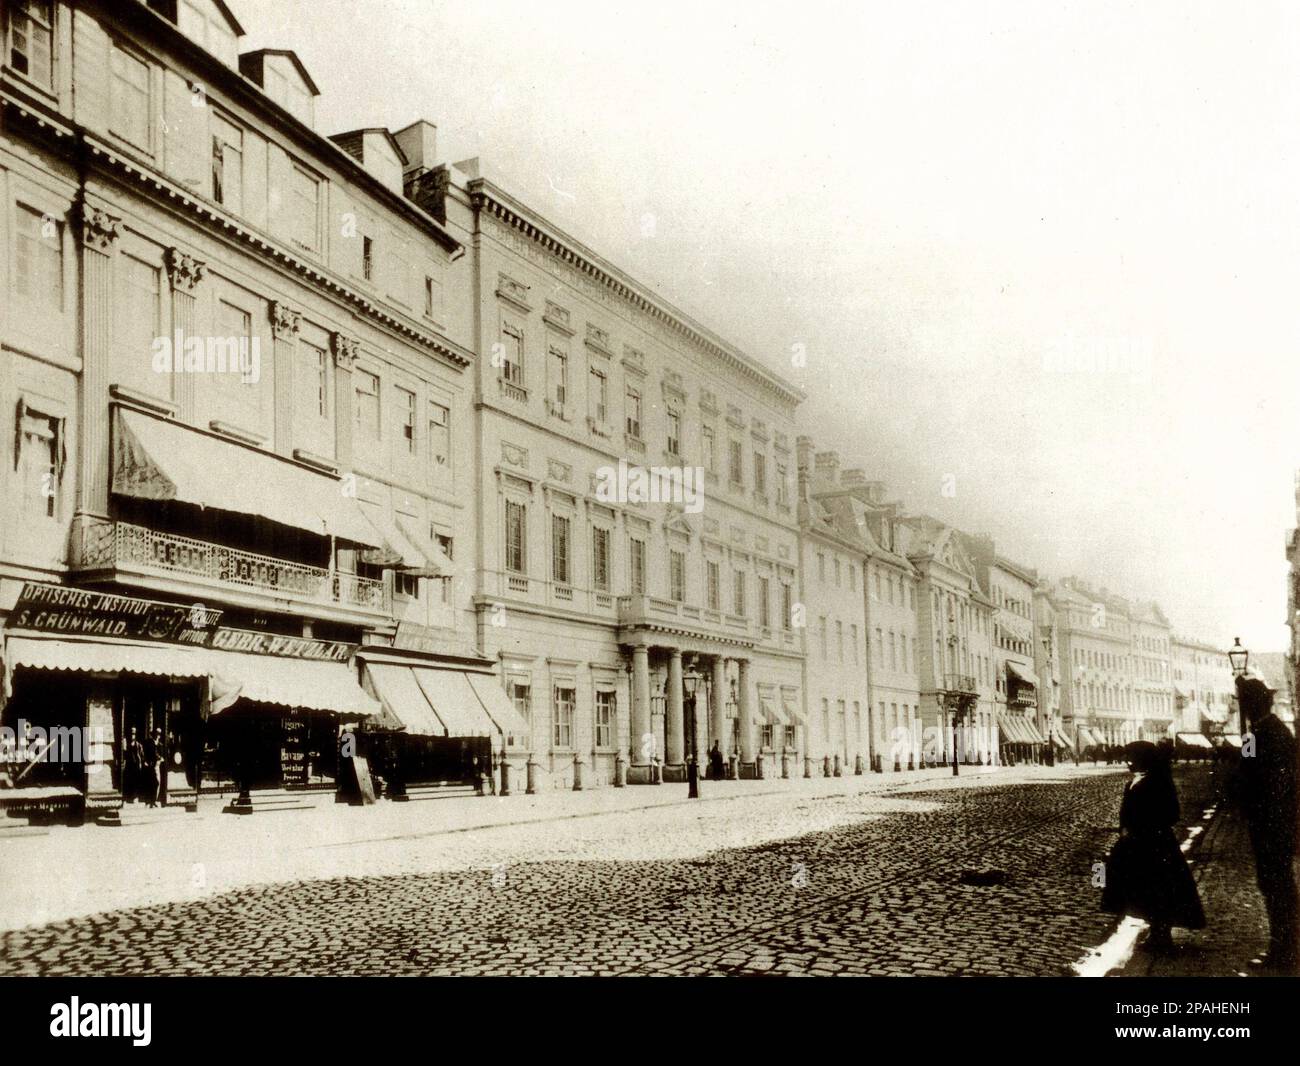 1875 : FRANKFURT AM MAIN , Deutschland : das Hotel Russischer Hof auf der Zeil, erbaut von Nicolas de Pigage 1794, abgerissen 1891 für den Neubau der Kaiserlichen Hauptpost. Foto von Carl Friedrich Mylius - Hotel de Russie - GERMANIEN - GEOGRAFIEN - GEOGRAFIE - FOTOSTORICHE - GESCHICHTSFOTOS - ARCHITEKTUR - ARCHITEKTUR - FRANCOFORTE - Archivio GBB Stockfoto